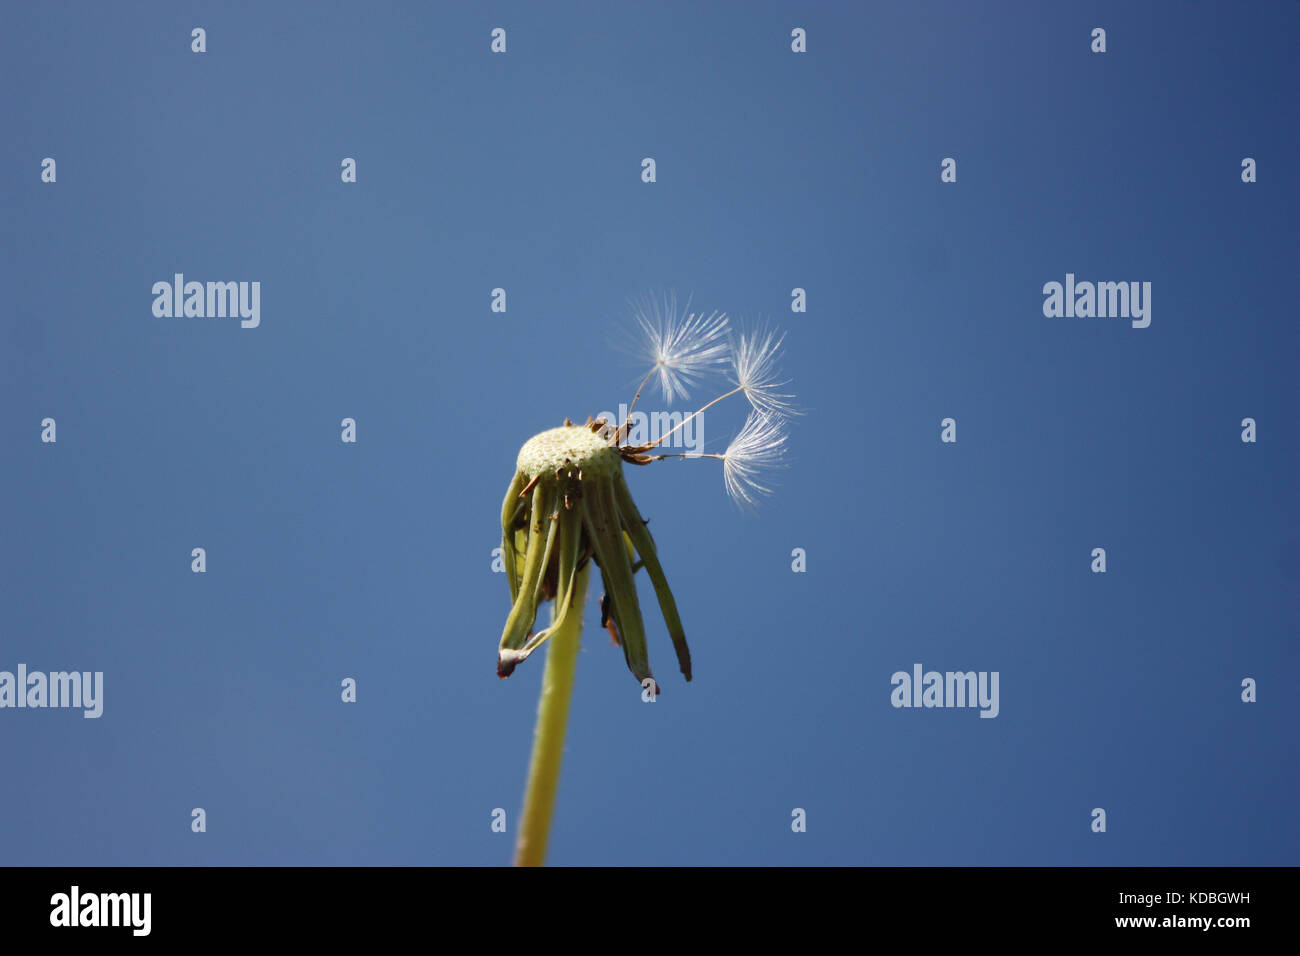 Pusteblume – Löwenzahn mit Samen die wegfliegen - Dandelion - Dandelion with seeds that fly away Stock Photo